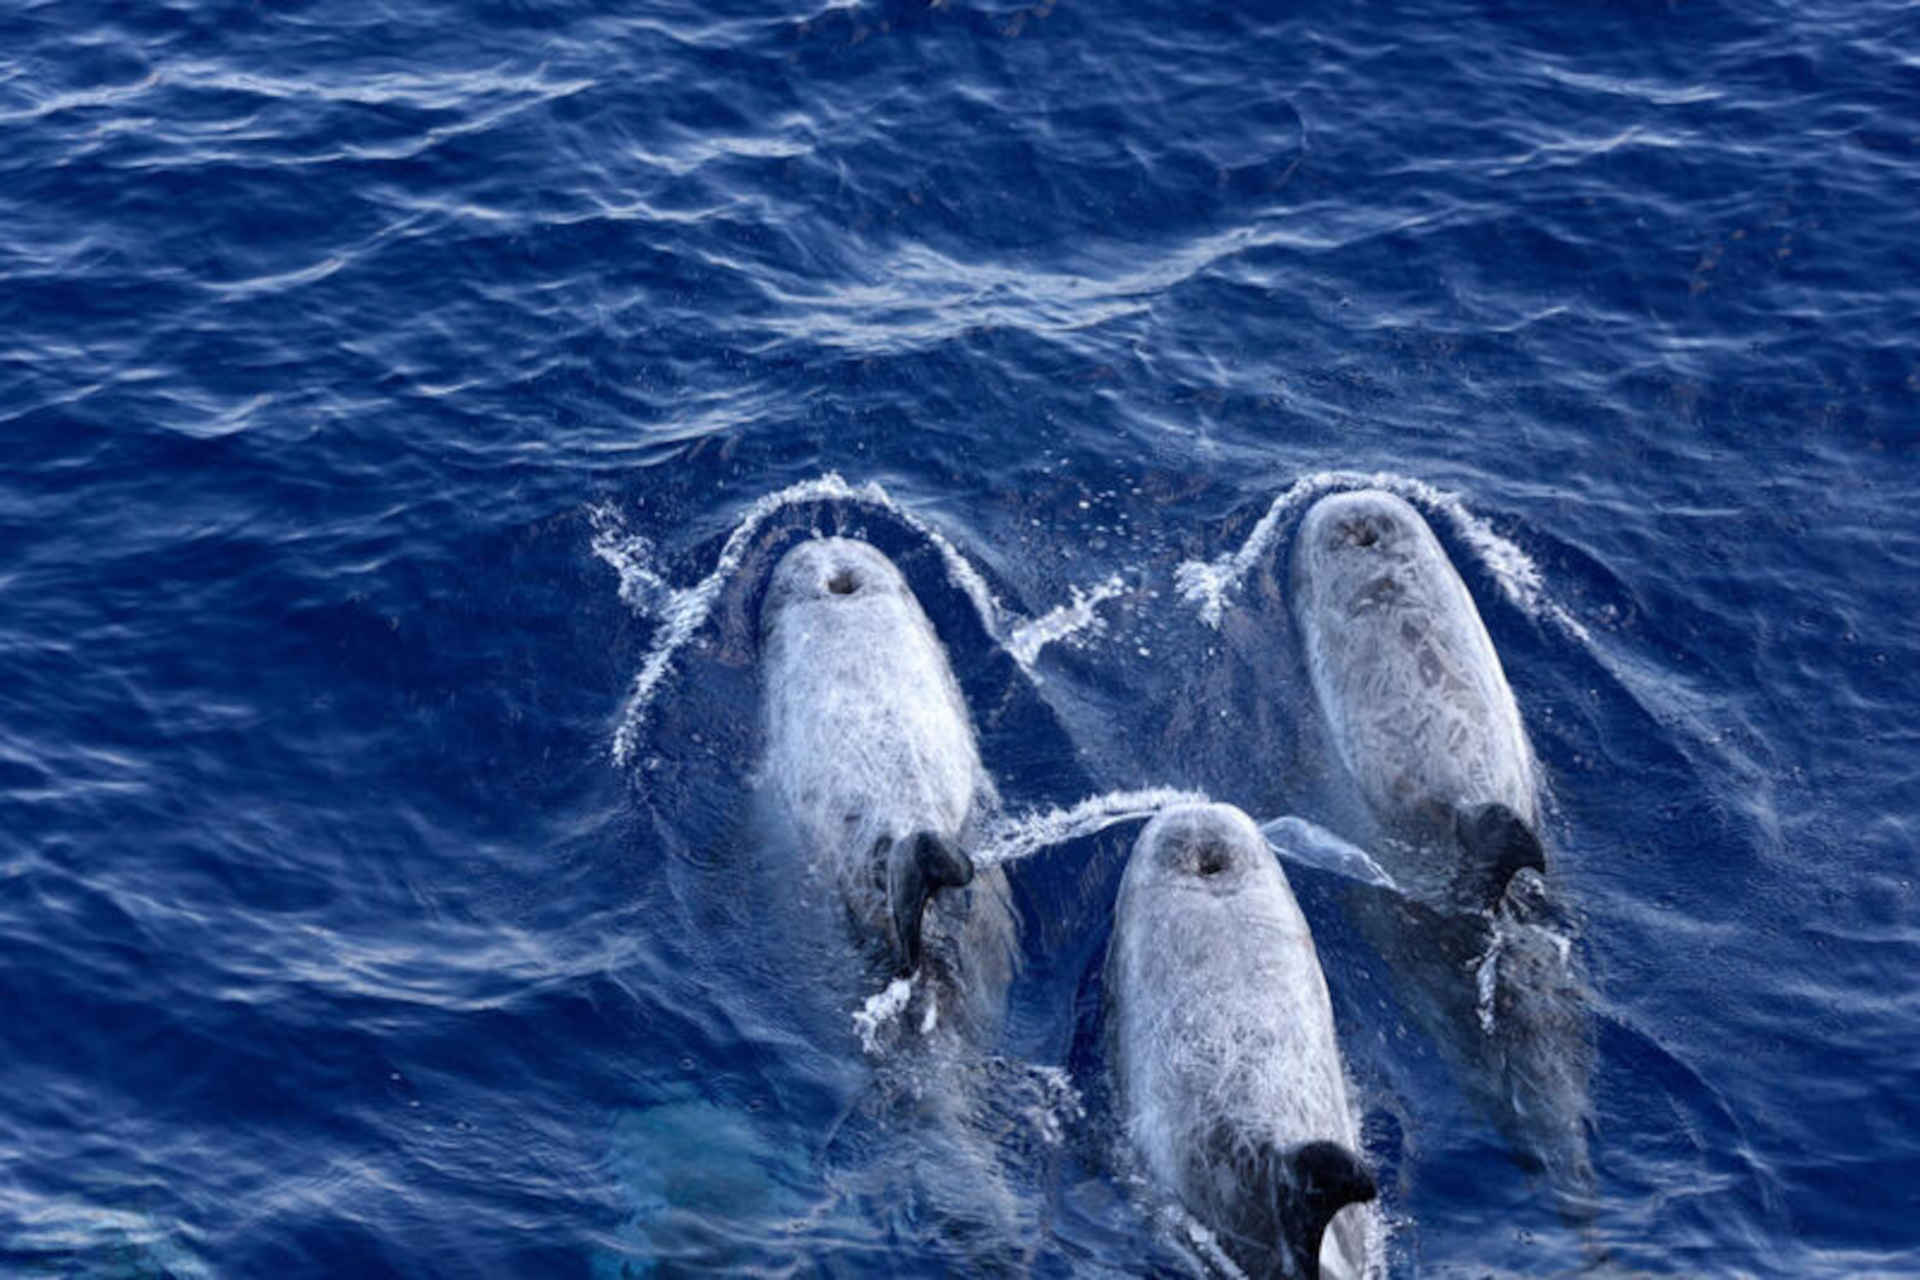 ປະເທດເກຼັກ, ການຂຸດເຈາະນອກຝັ່ງແມ່ນໄພຂົ່ມຂູ່ຕໍ່ cetaceans